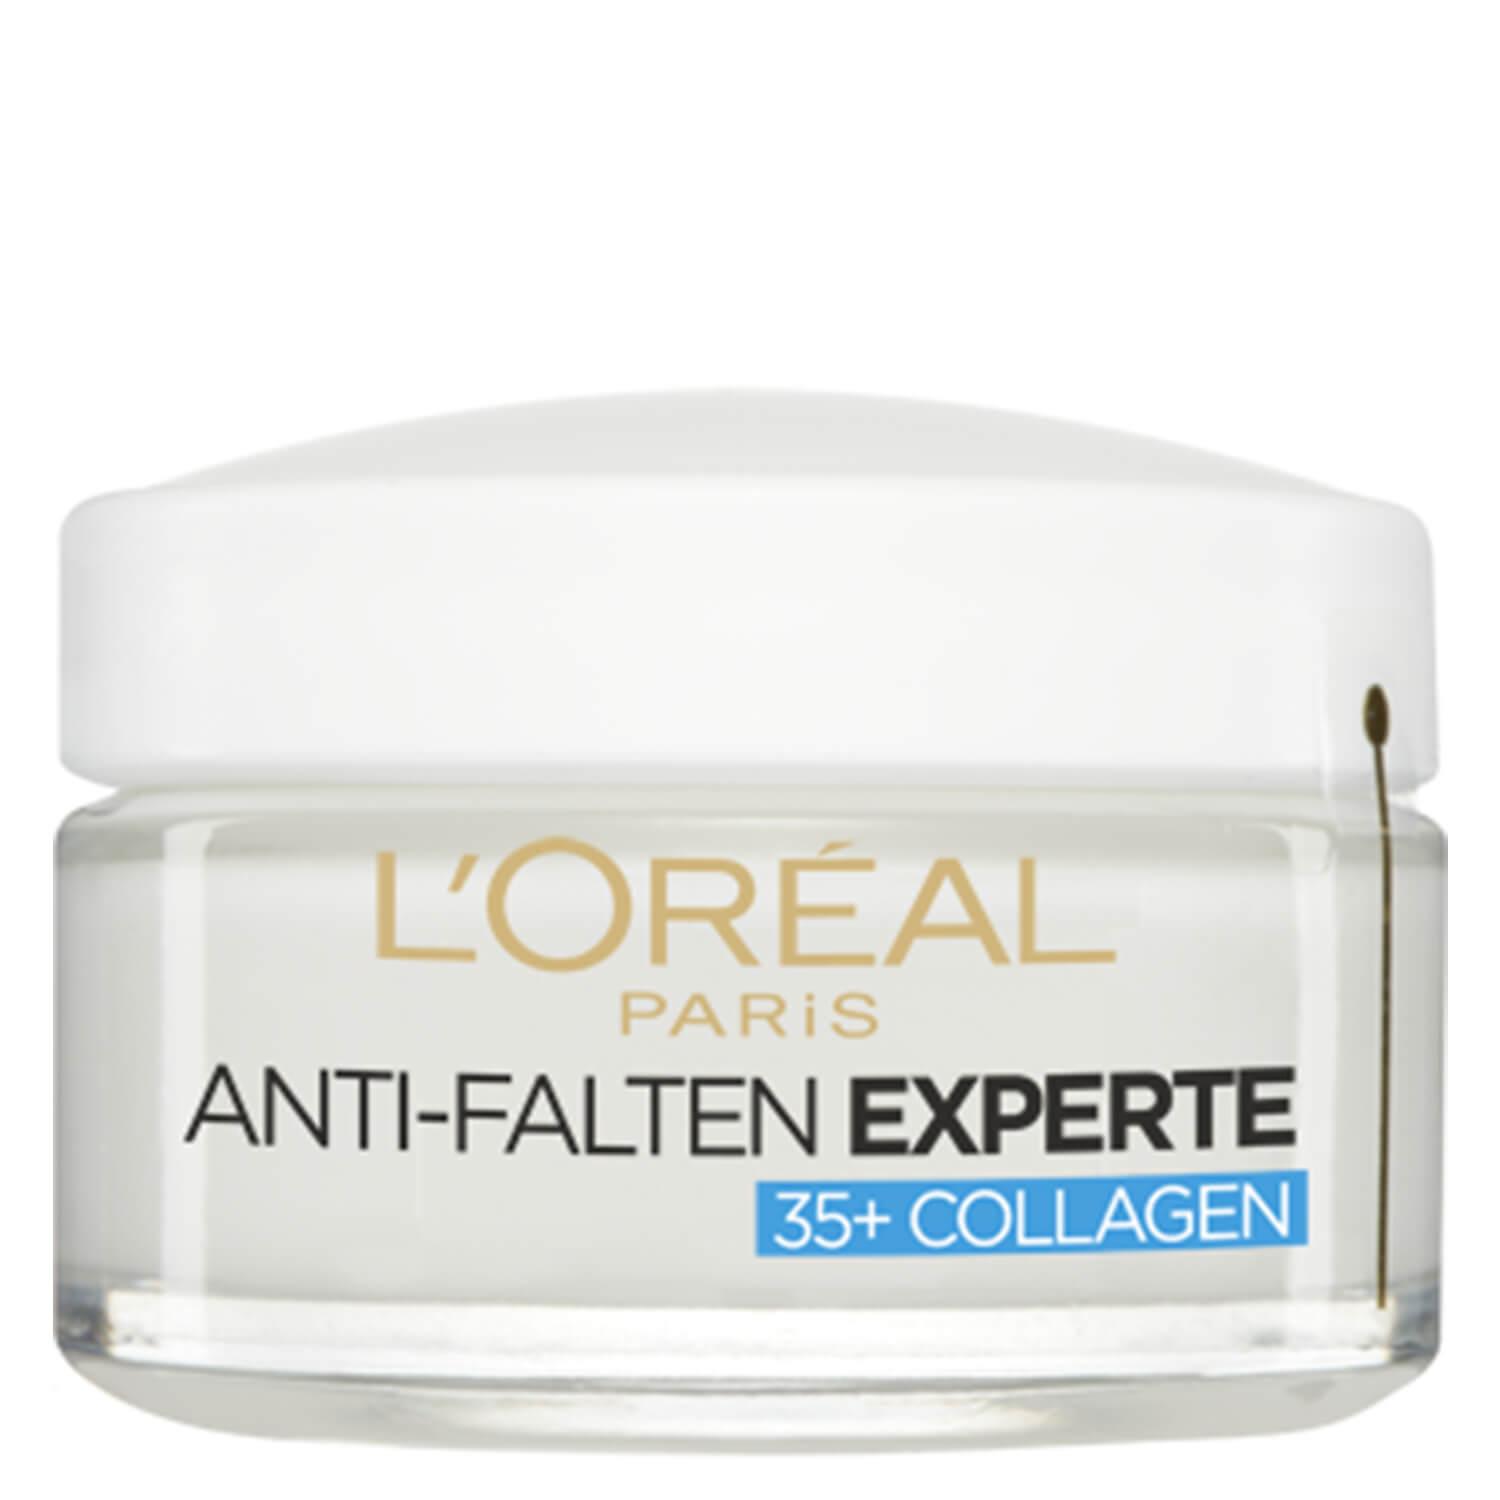 LOréal Skin Expert - Anti-Falten Experte Collagen Feuchtigkeitspflege Tag 35+